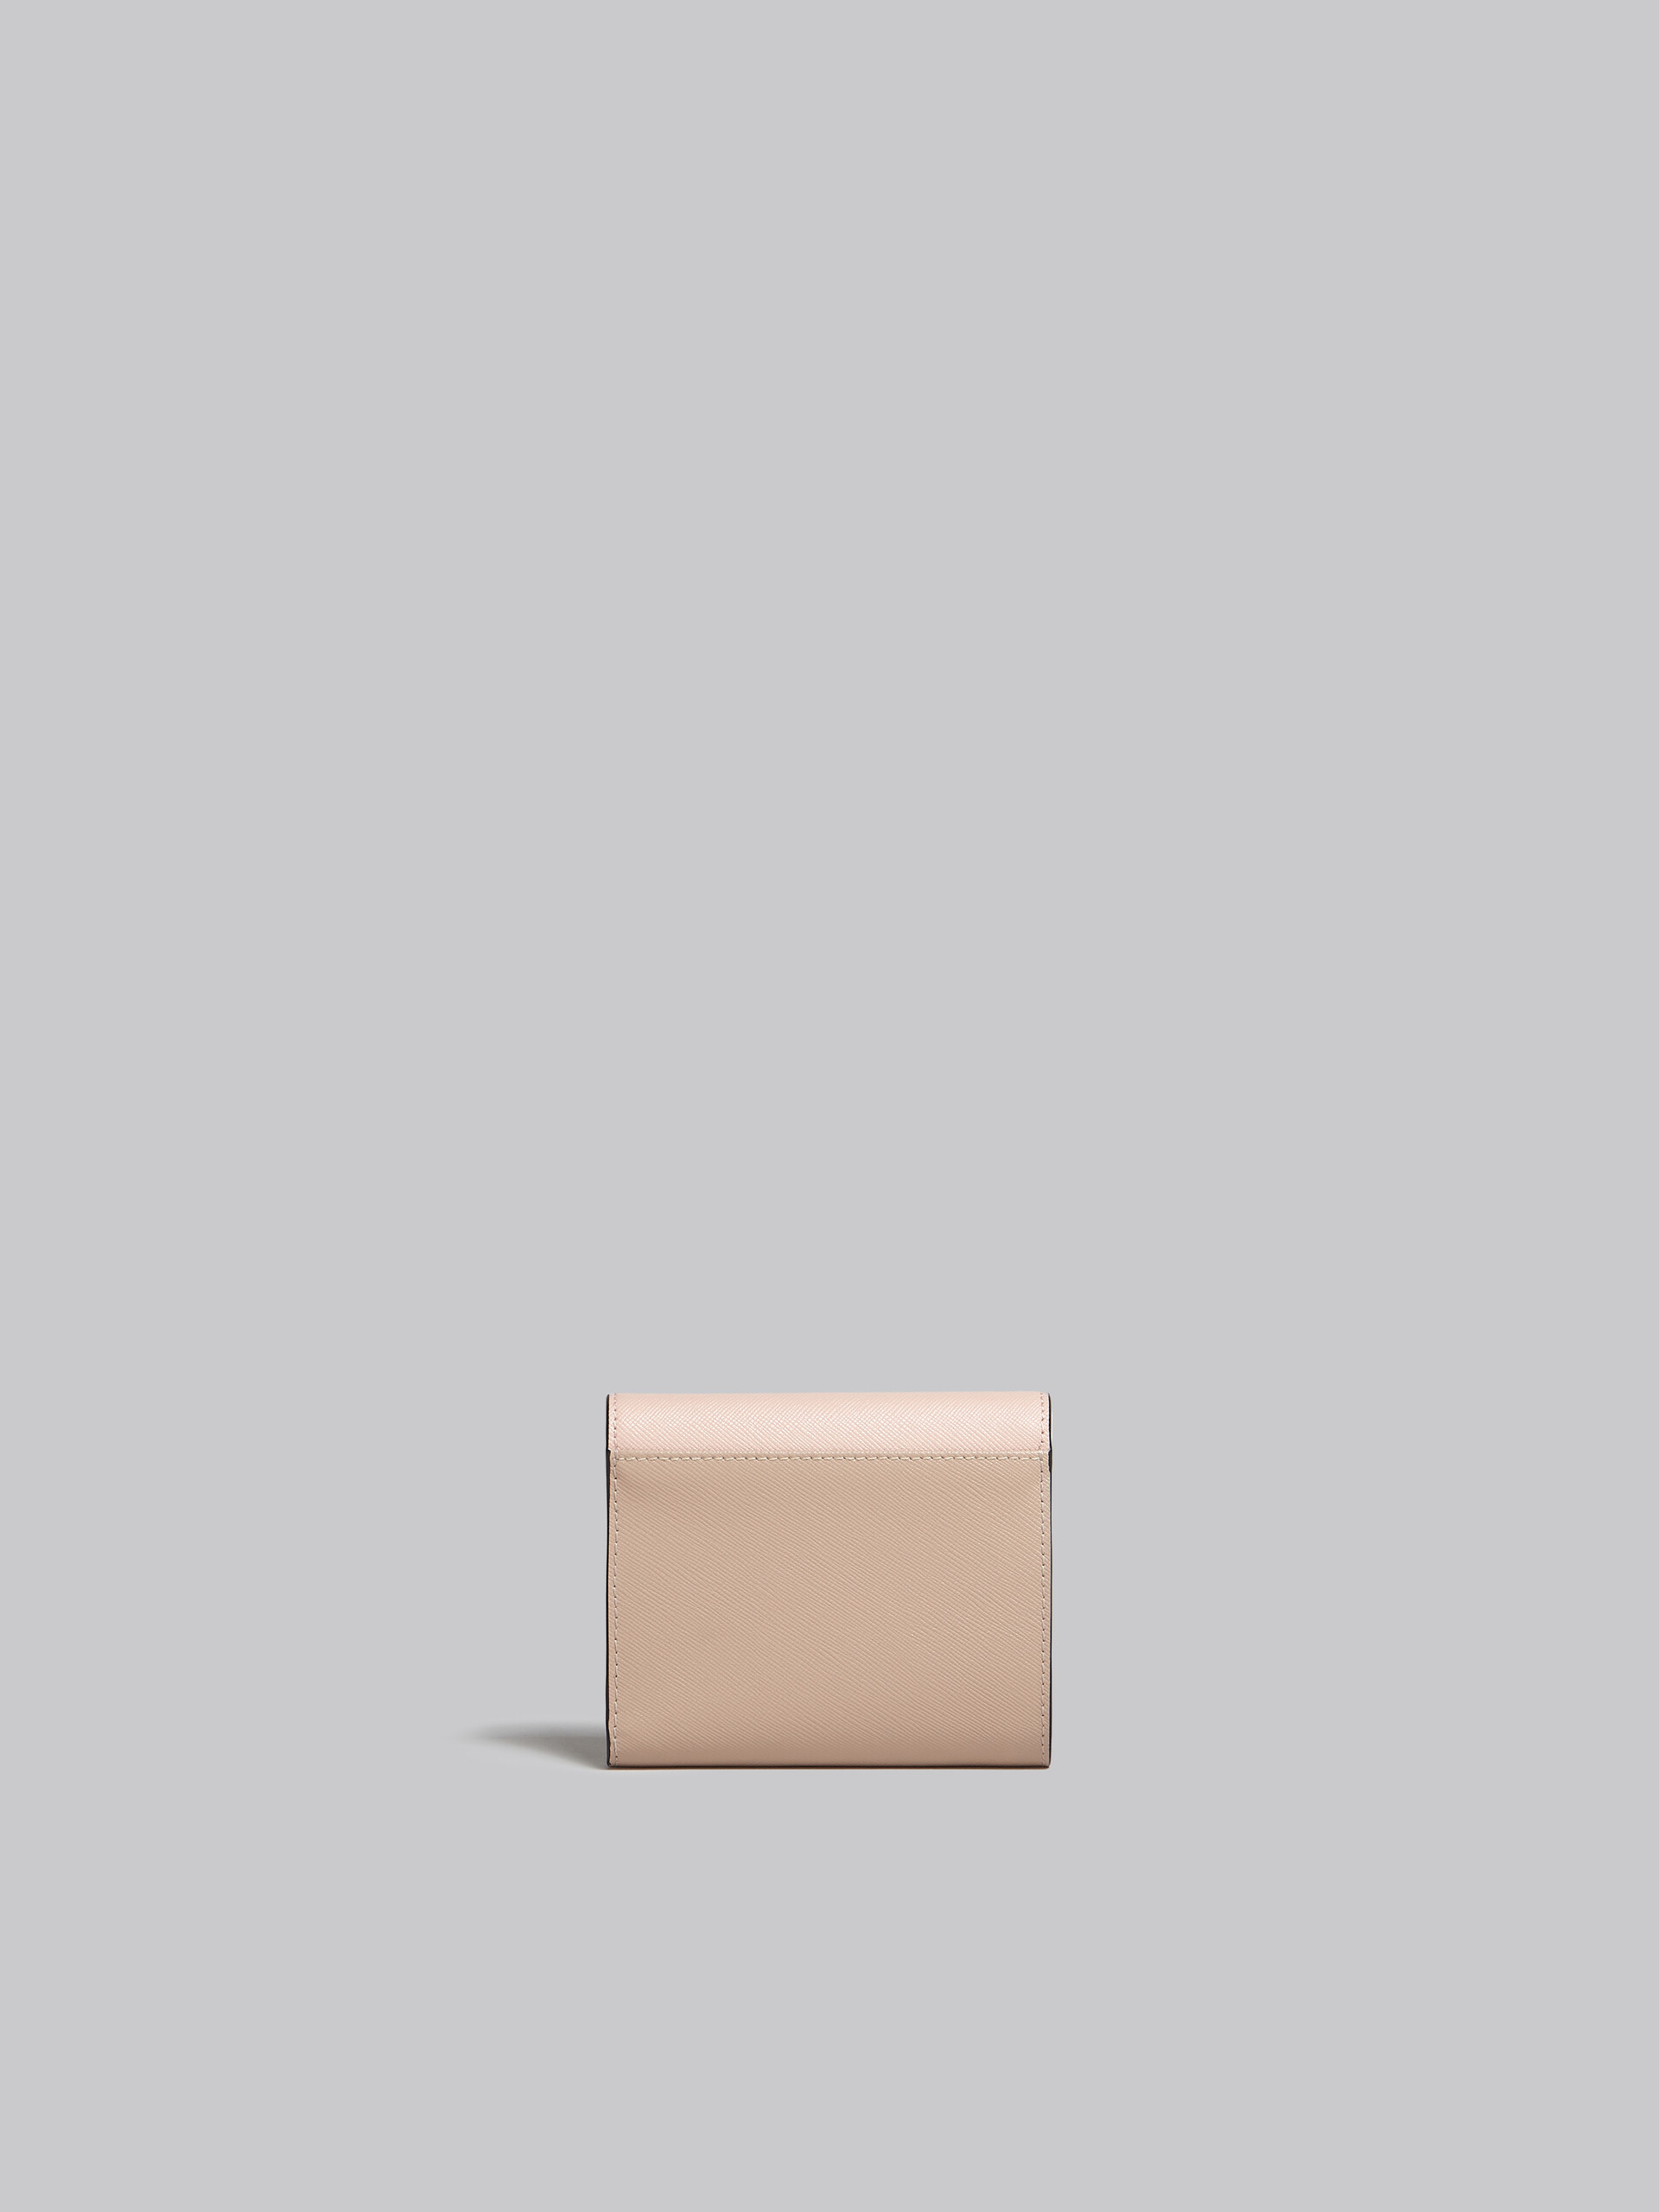 Portemonnaie aus Saffiano-Leder in Hellgrün, Weiß und Braun - Brieftaschen - Image 3